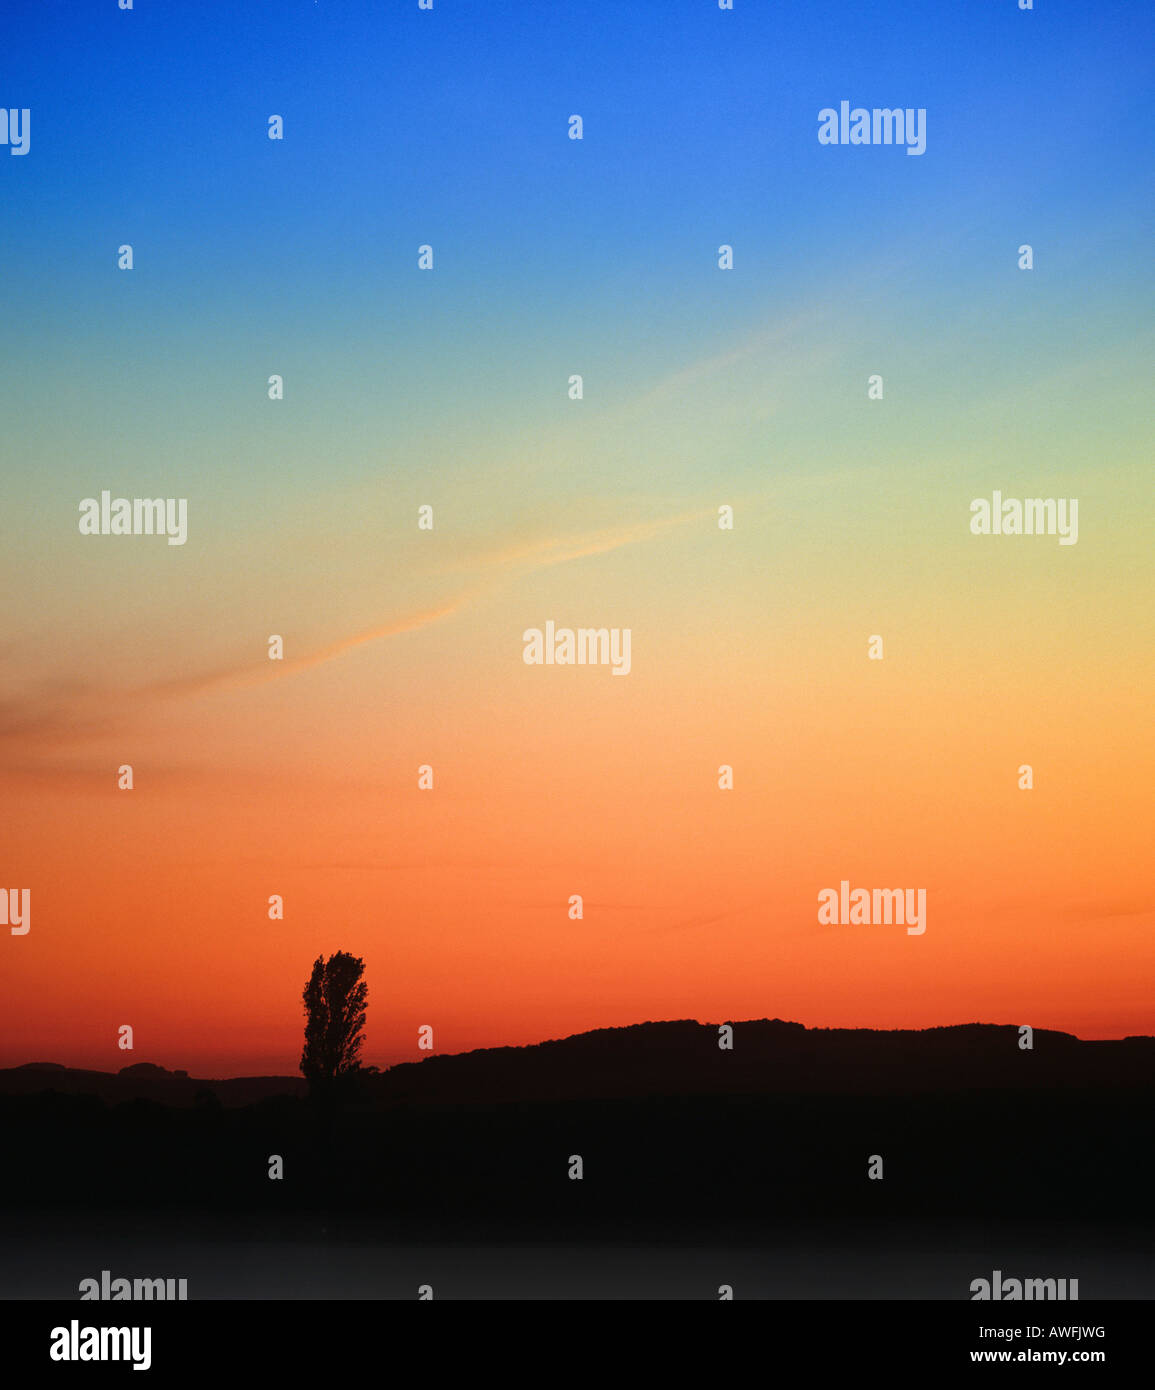 Il PIOPPO stagliano contro un incandescente cielo notturno Foto Stock